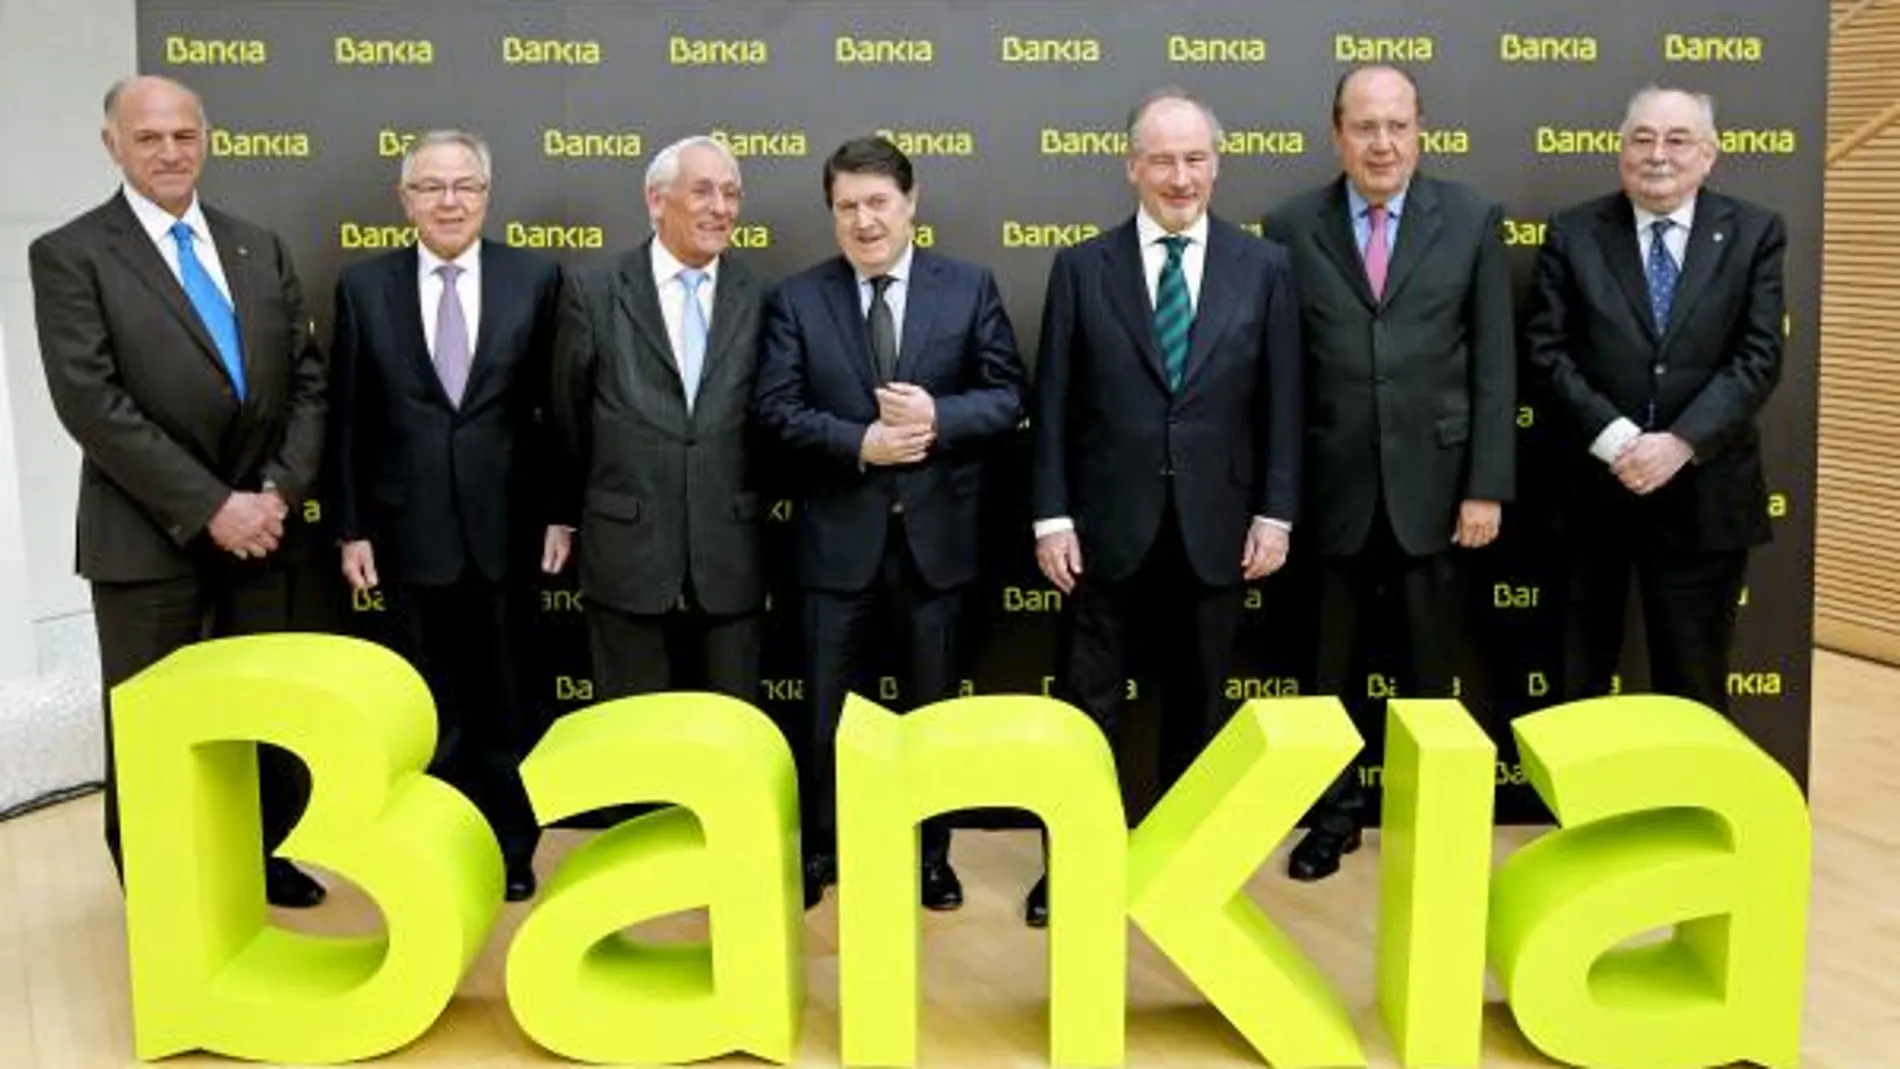 Los presidentes de las siete cajas integrantes de Bankia posaron ayer en el Palau de les Arts junto al logotipo de la nueva entidad